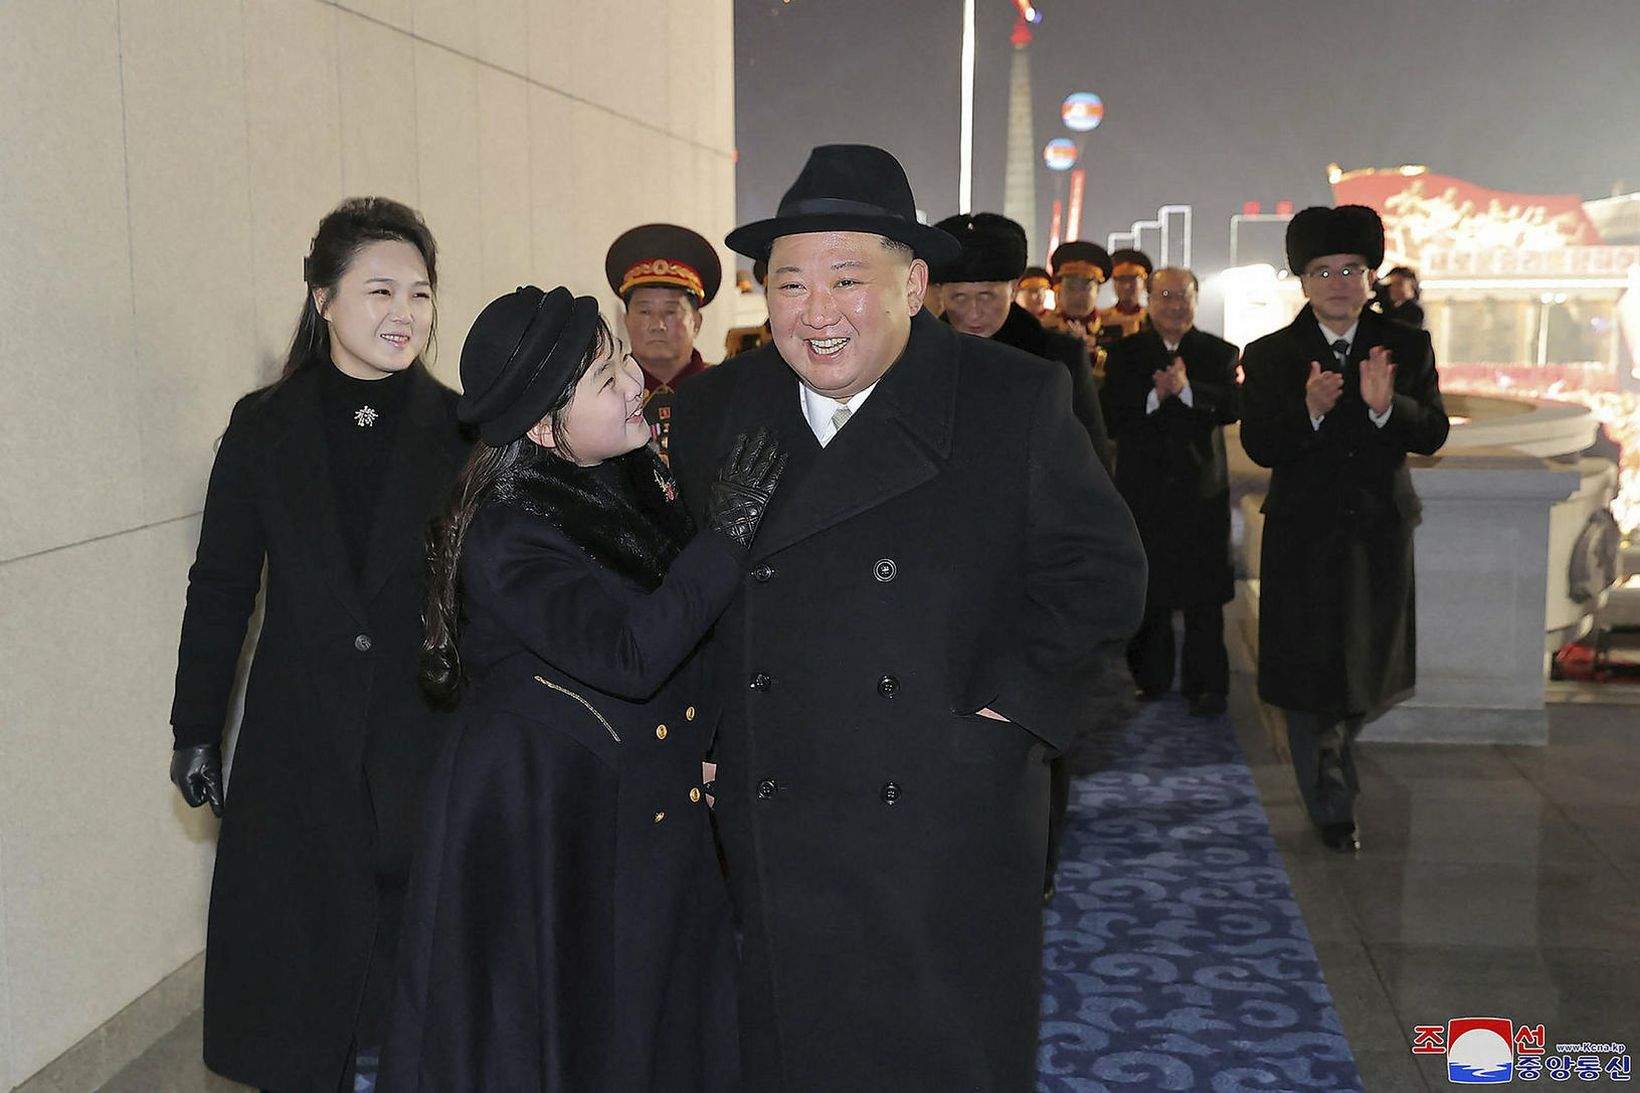 Kim Jong-un ásamt dóttur sinni og eiginkonu.